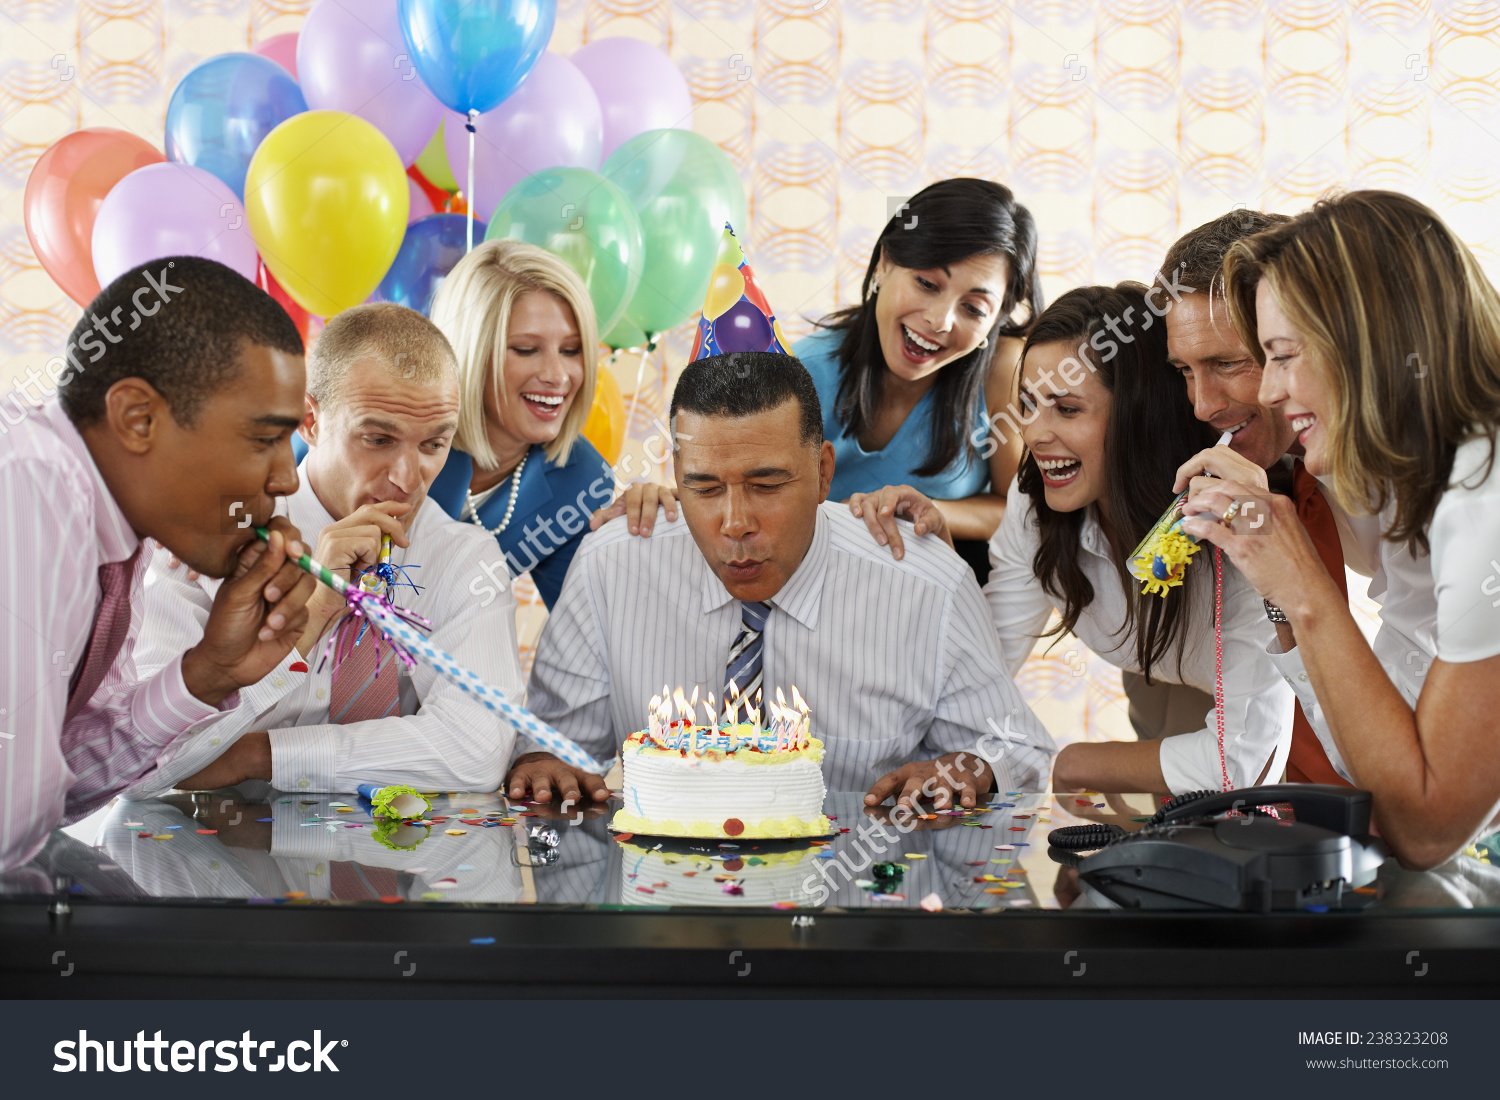 Много гостей за столом. Празднование дня рождения. Празднуют день рождения. С днем рождения организации. Человек праздник.